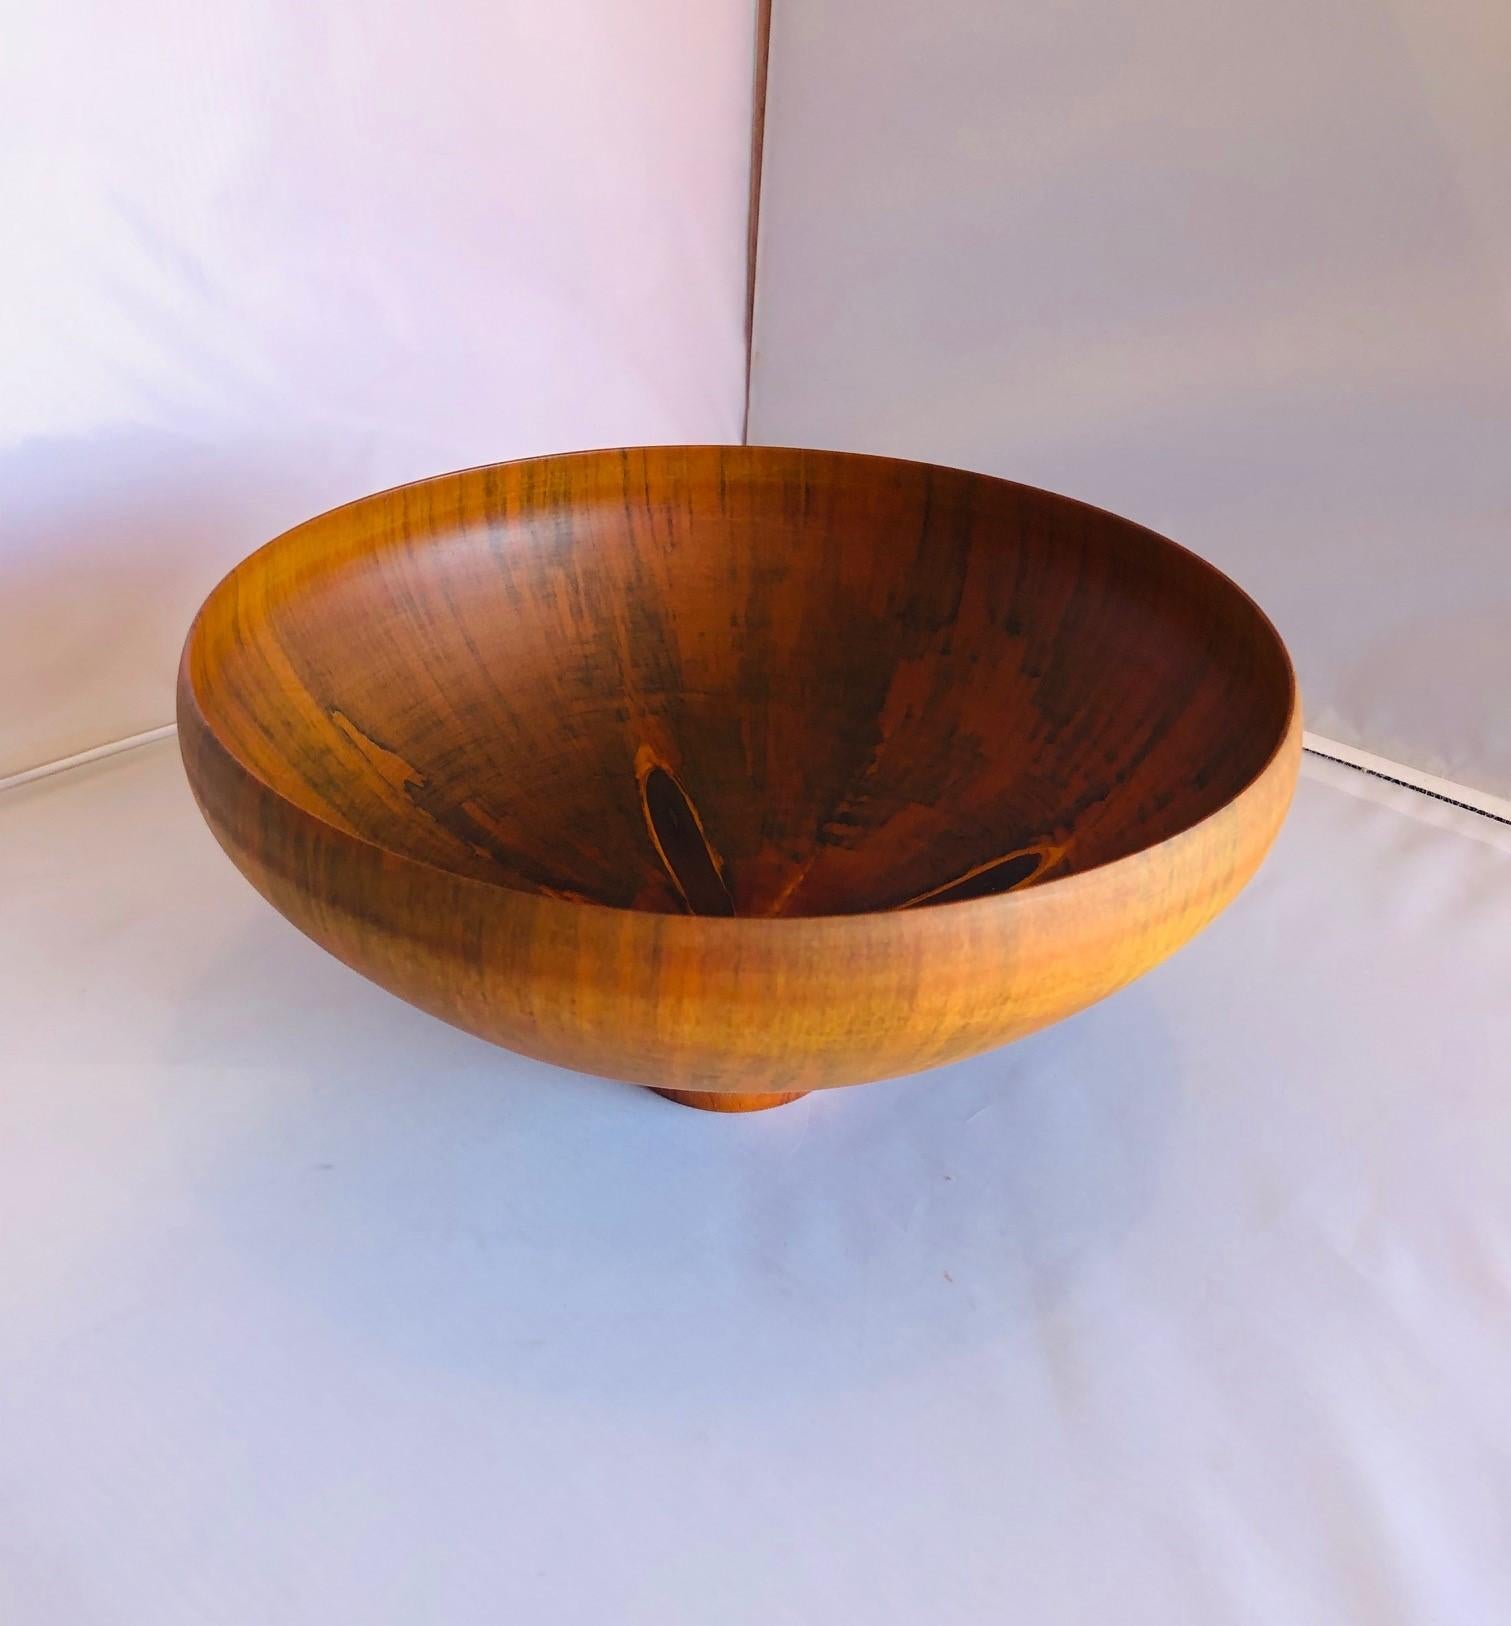 American Norfolk Island Pine Translucent Bowl by Gene Bickerstaff